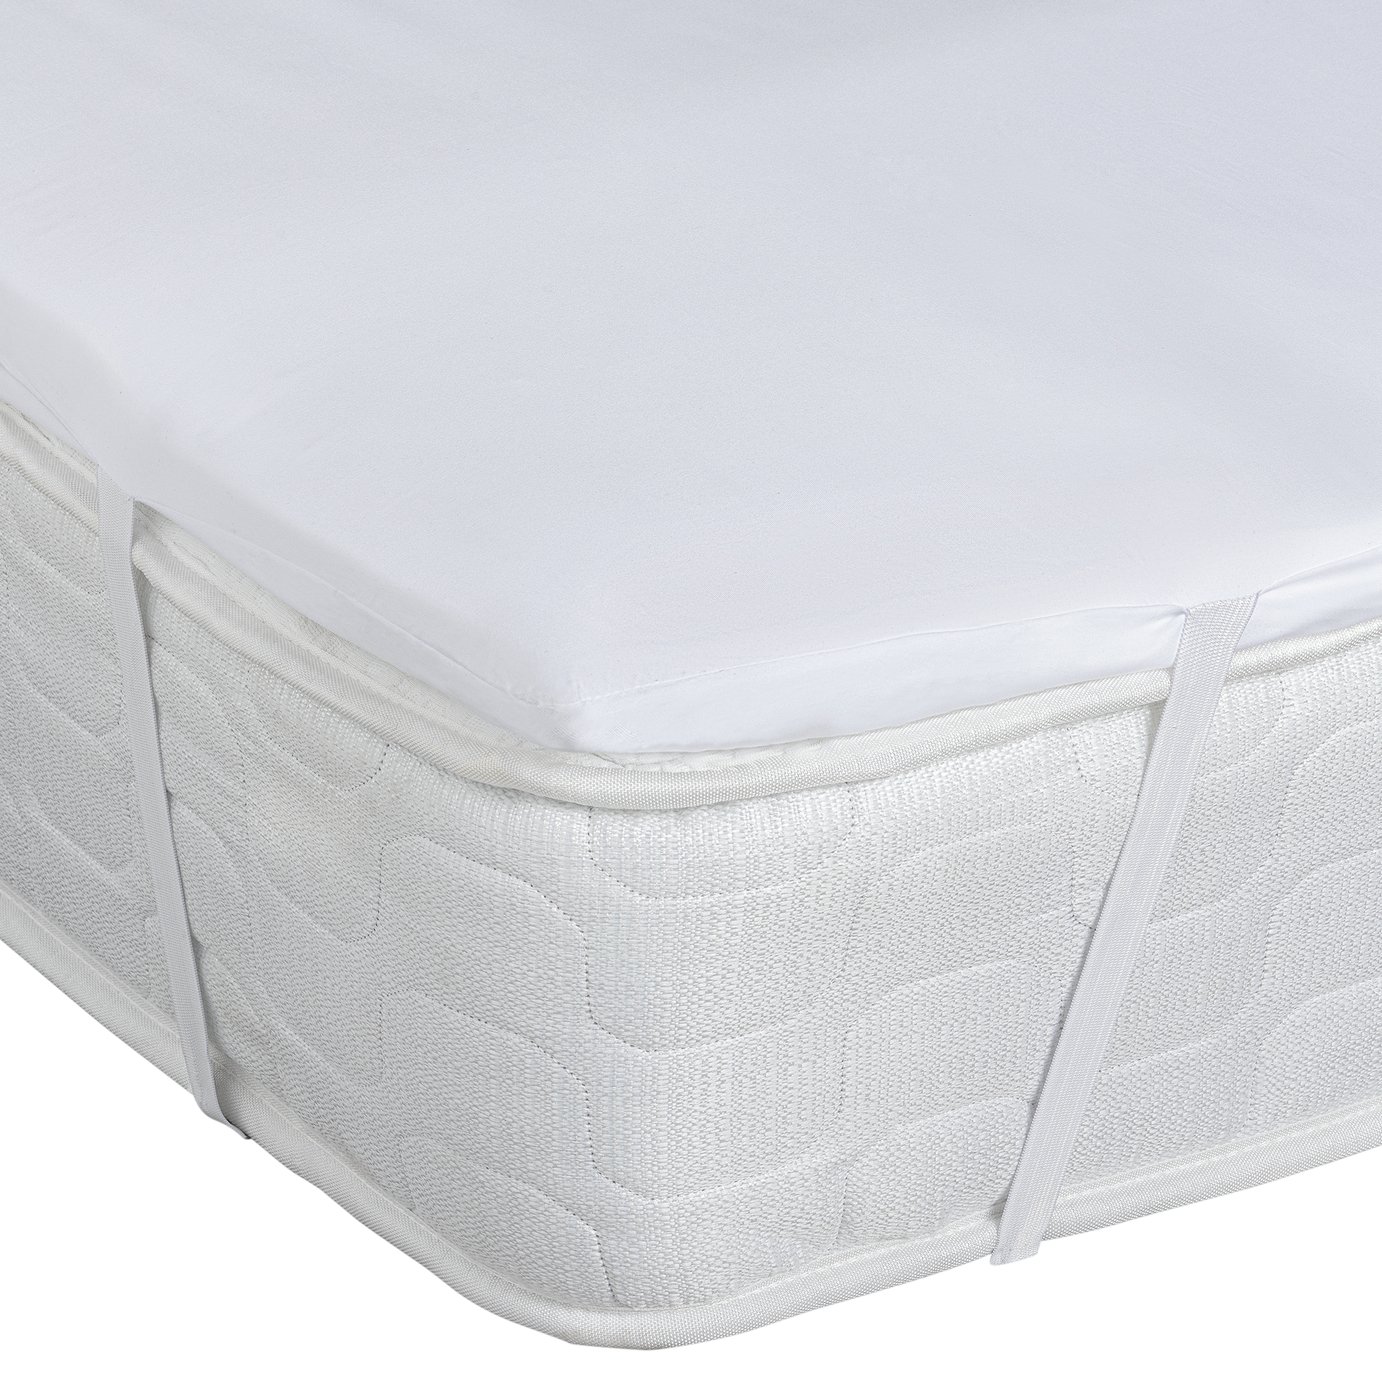 foam mattress topper reviews